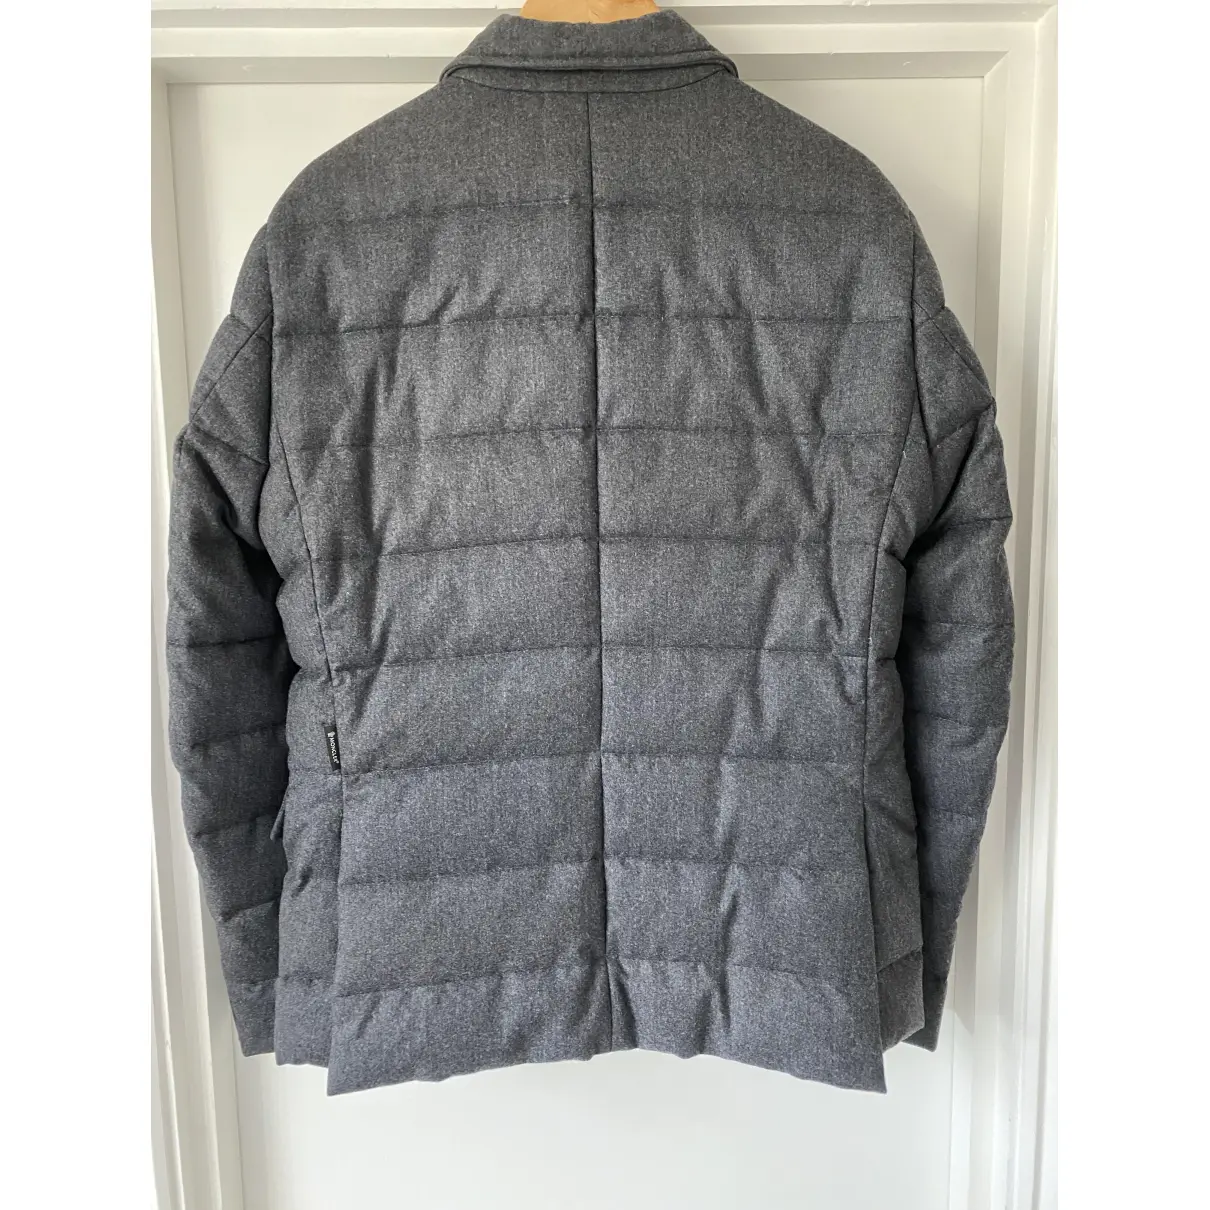 Buy Moncler Classic wool coat online